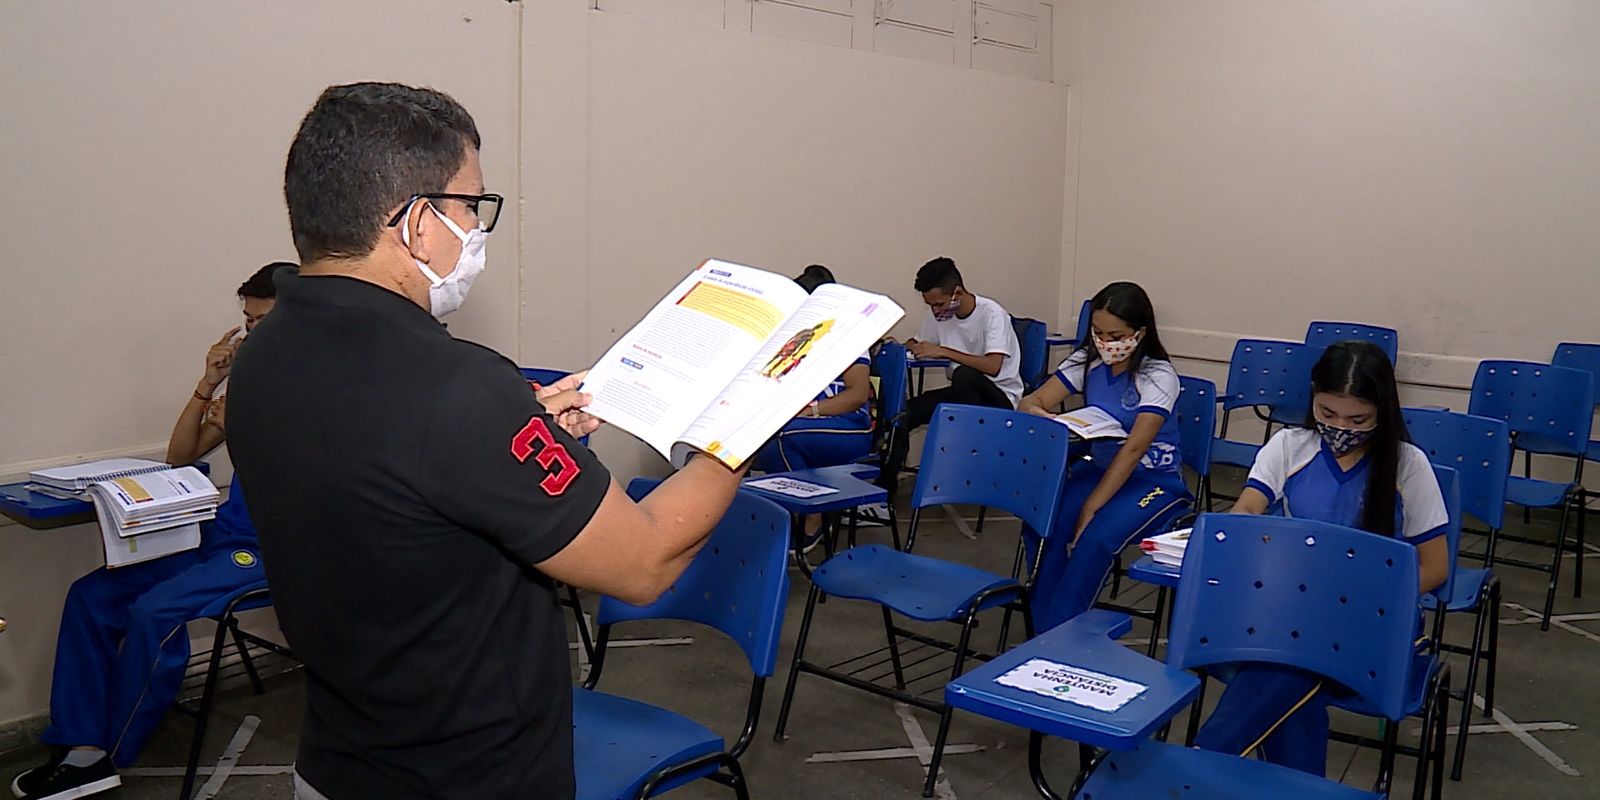 Professor dá aula em Manaus